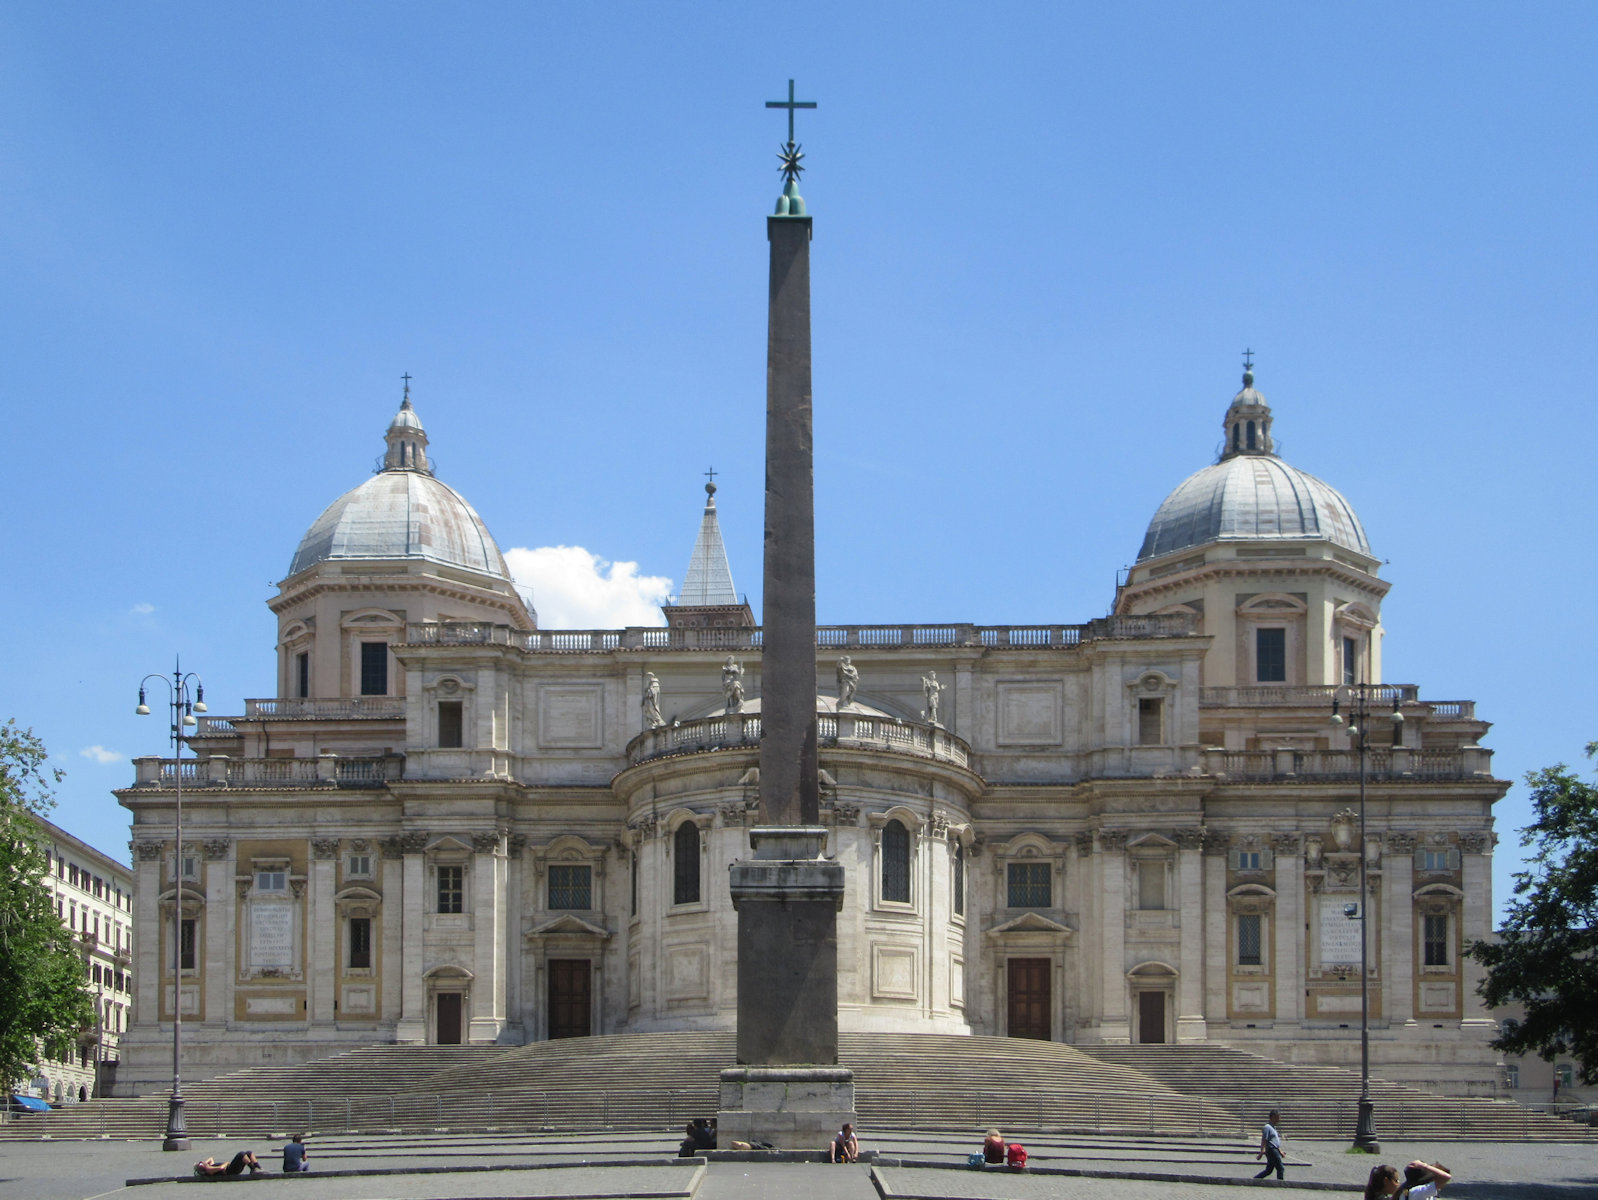 Südwestfassade der Basilika Santa Maria Maggiore in Rom mit Obelisk aus dem Mausoleum von Kaiser Augustus, ursprünglich stand er in Ägypten